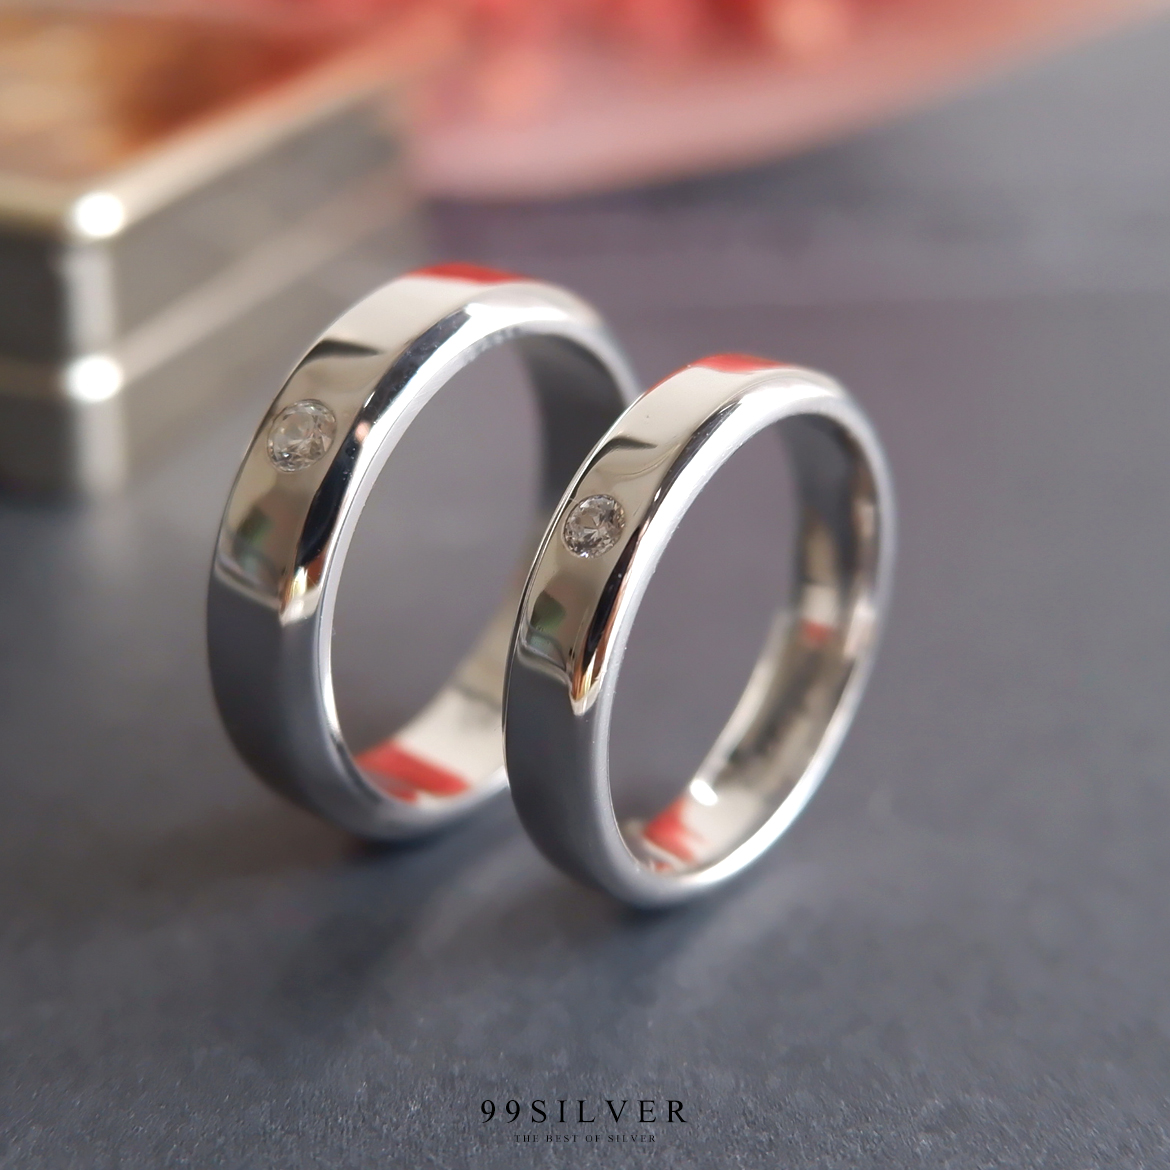 แหวนคู่รักลดขอบฝังเพชรวงละ 1 เม็ด หน้าแหวน 4 และ 6 มิลลิเมตร